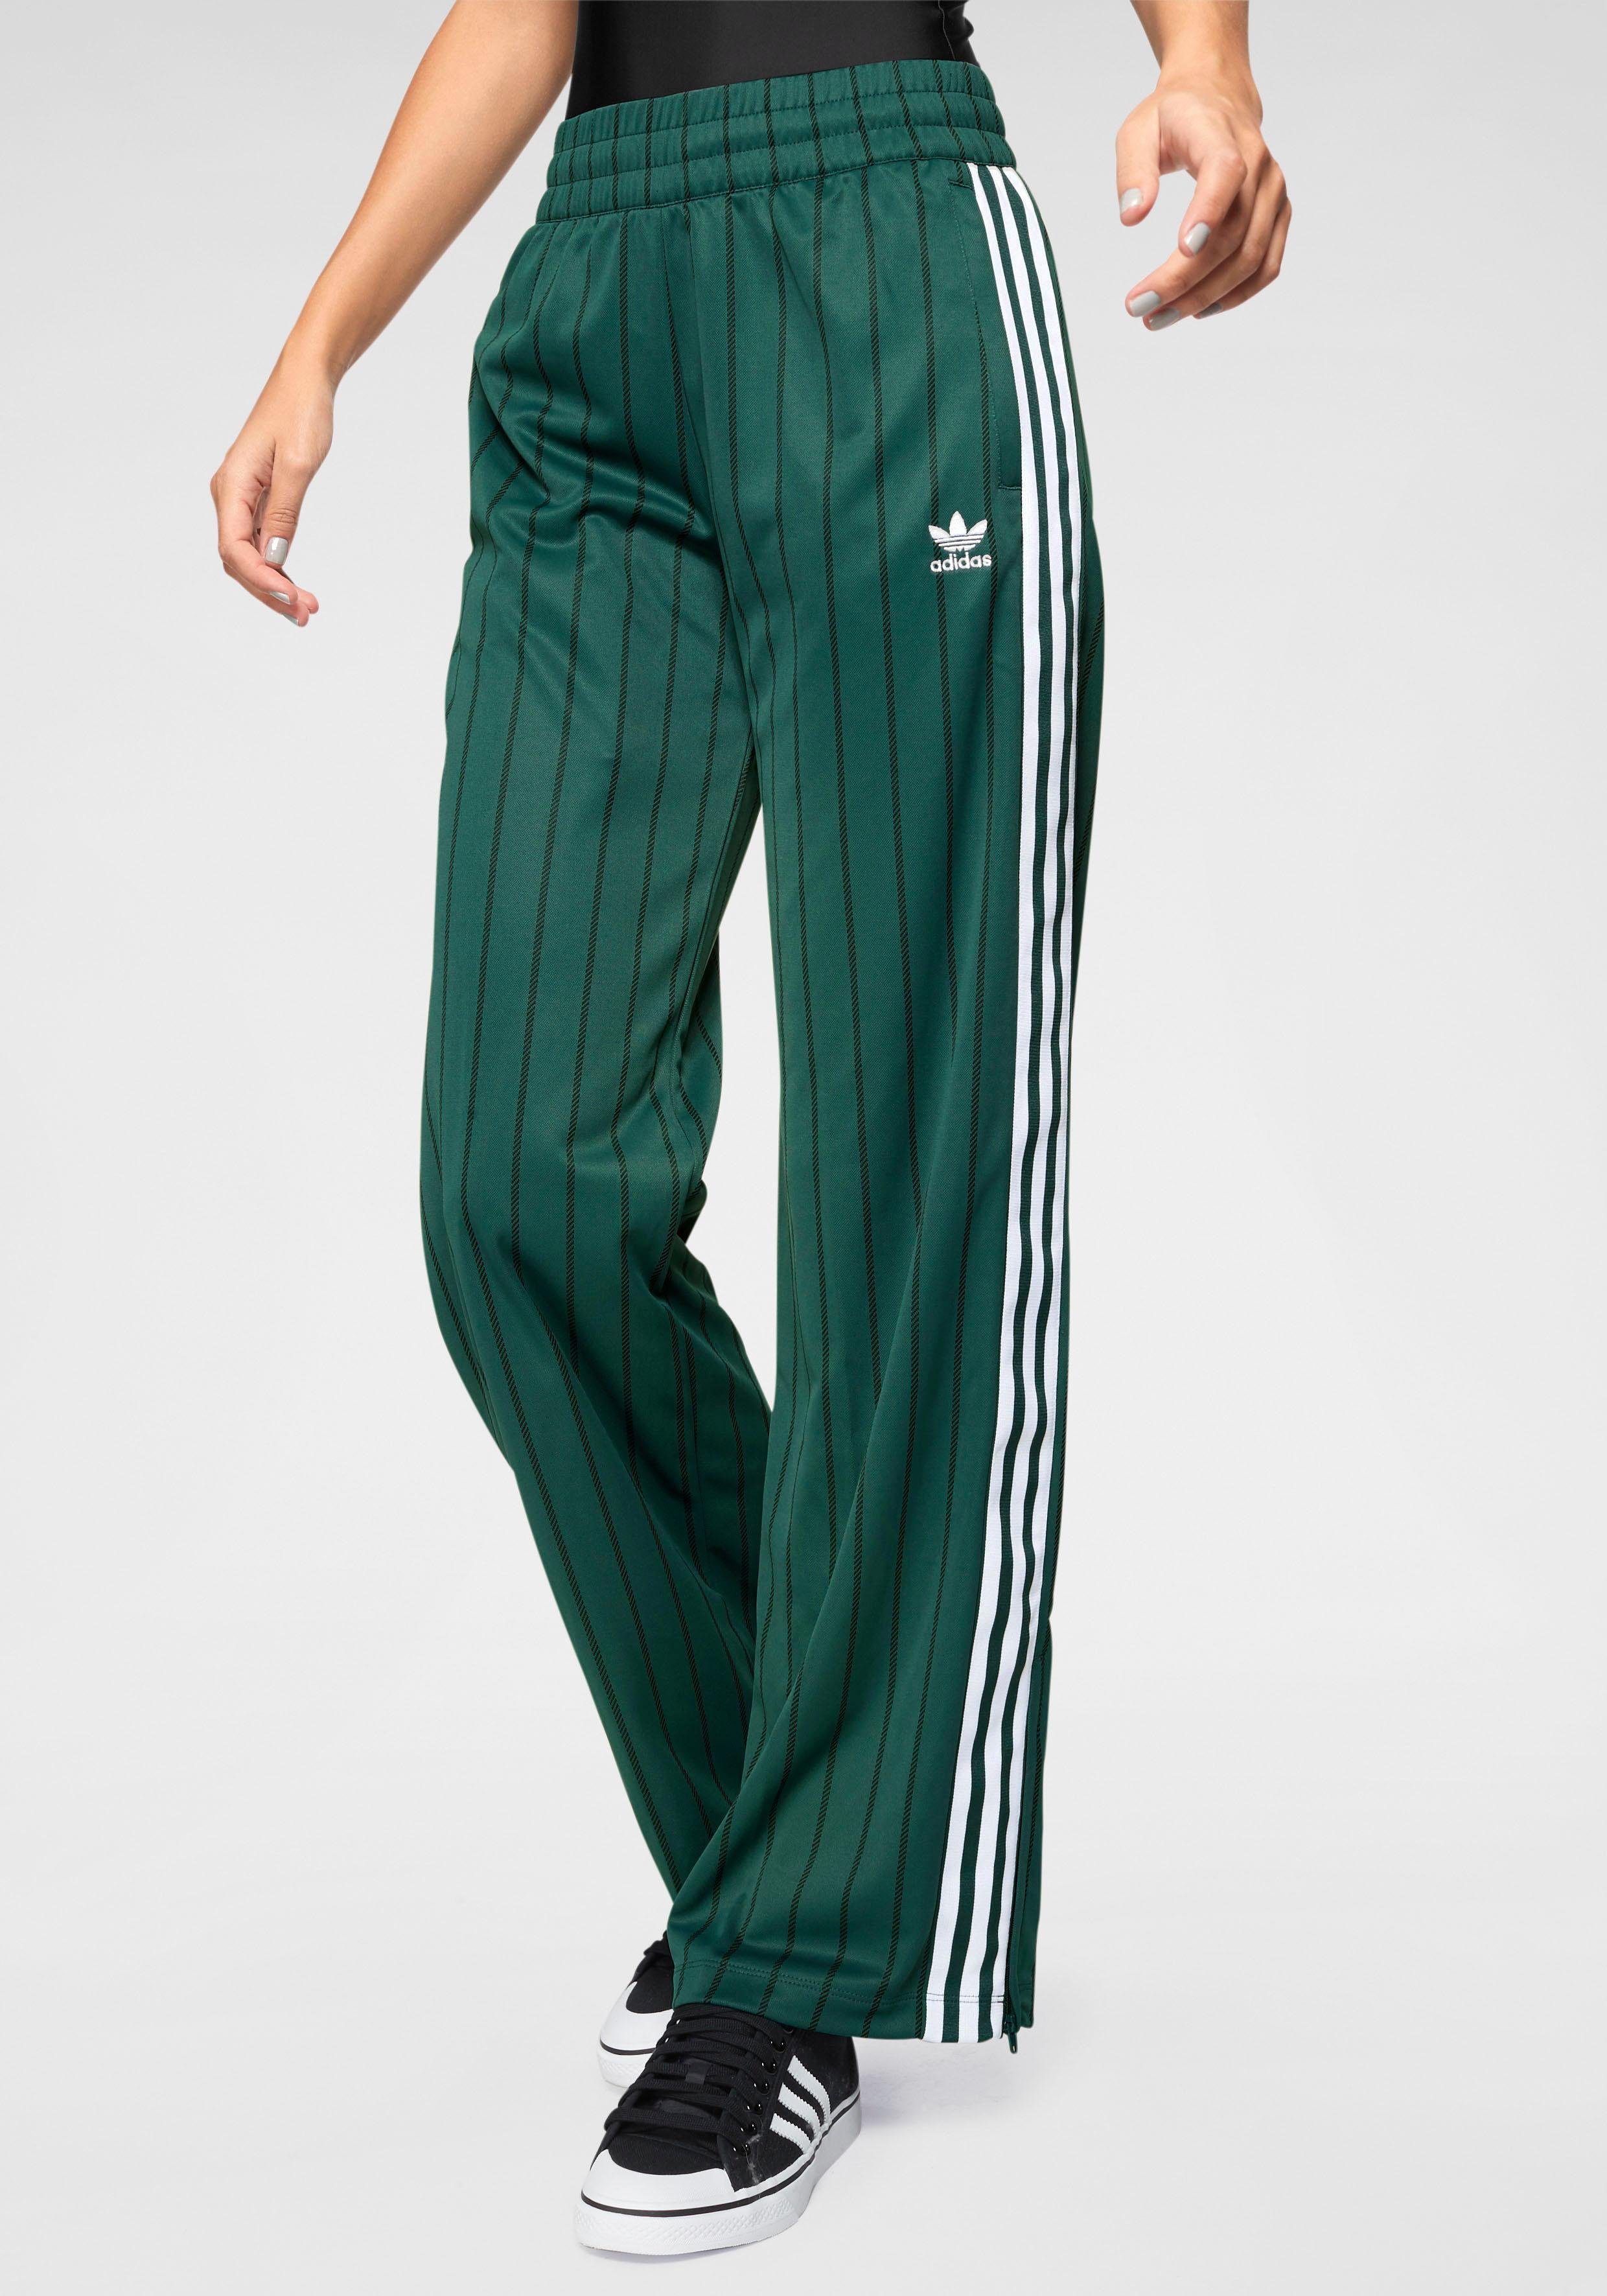 Адидас зеленый спортивный. Брюки track Pant adidas. Adidas Originals штаны широкие. Adidas SST track Pants. Широкие штаны adidas NANOTEX.